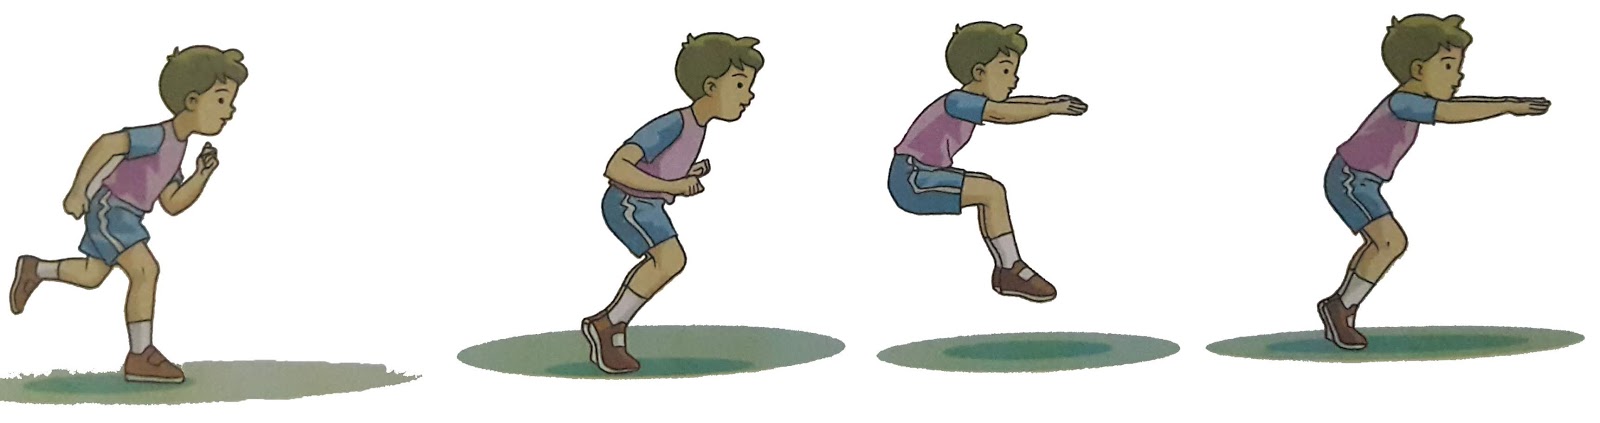 Sikap awal gerak langkah dasar melompat adalah berdiri dengan posisi kedua kaki